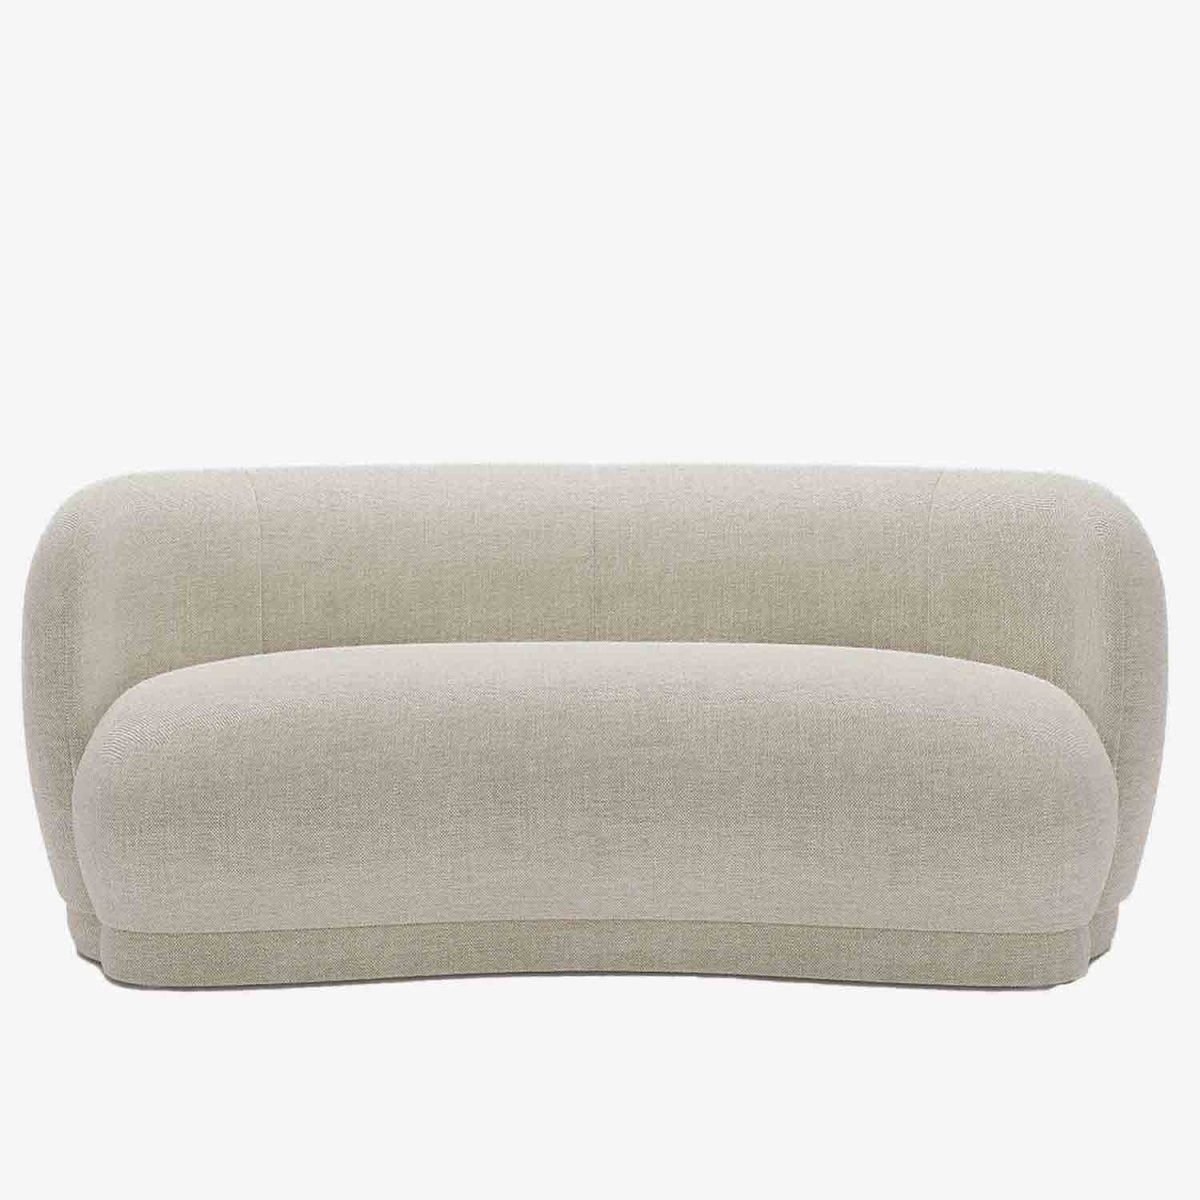 Canapé design tissu beige - Potiron Paris, les canapés design de qualité pas chers